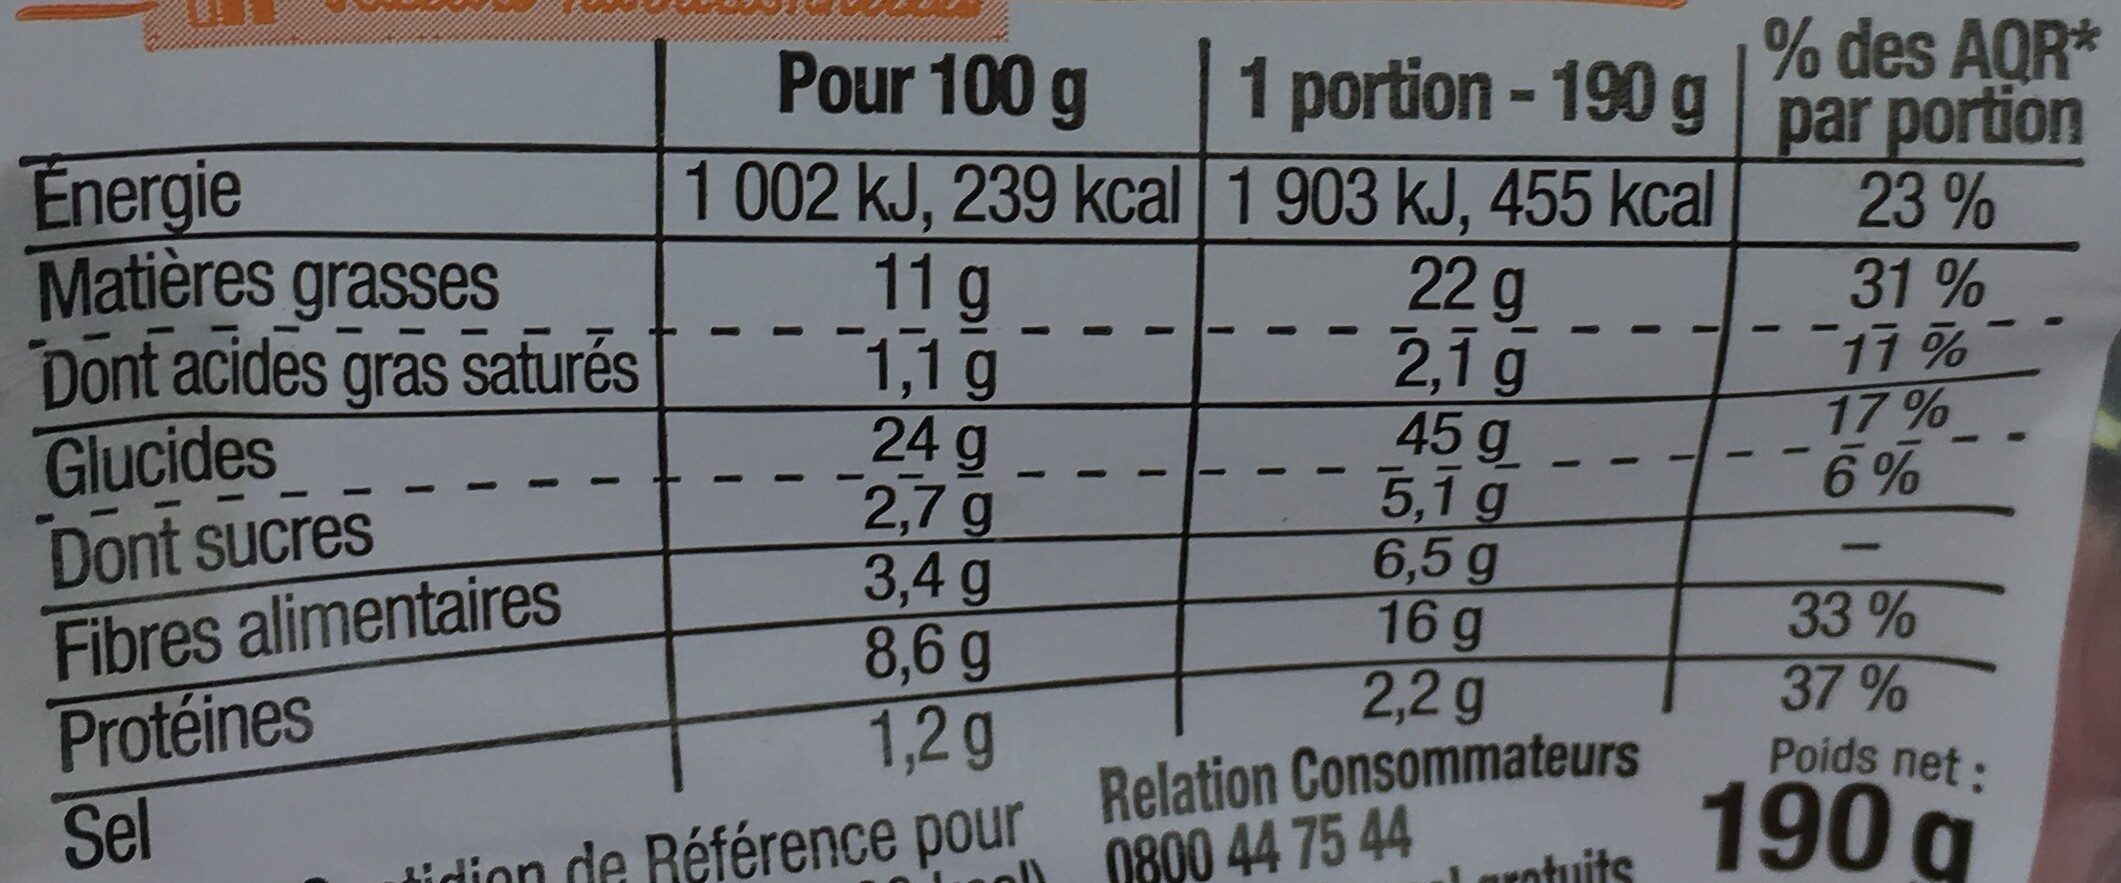 Sandwich maxi poulet rôti crudités - Nutrition facts - fr